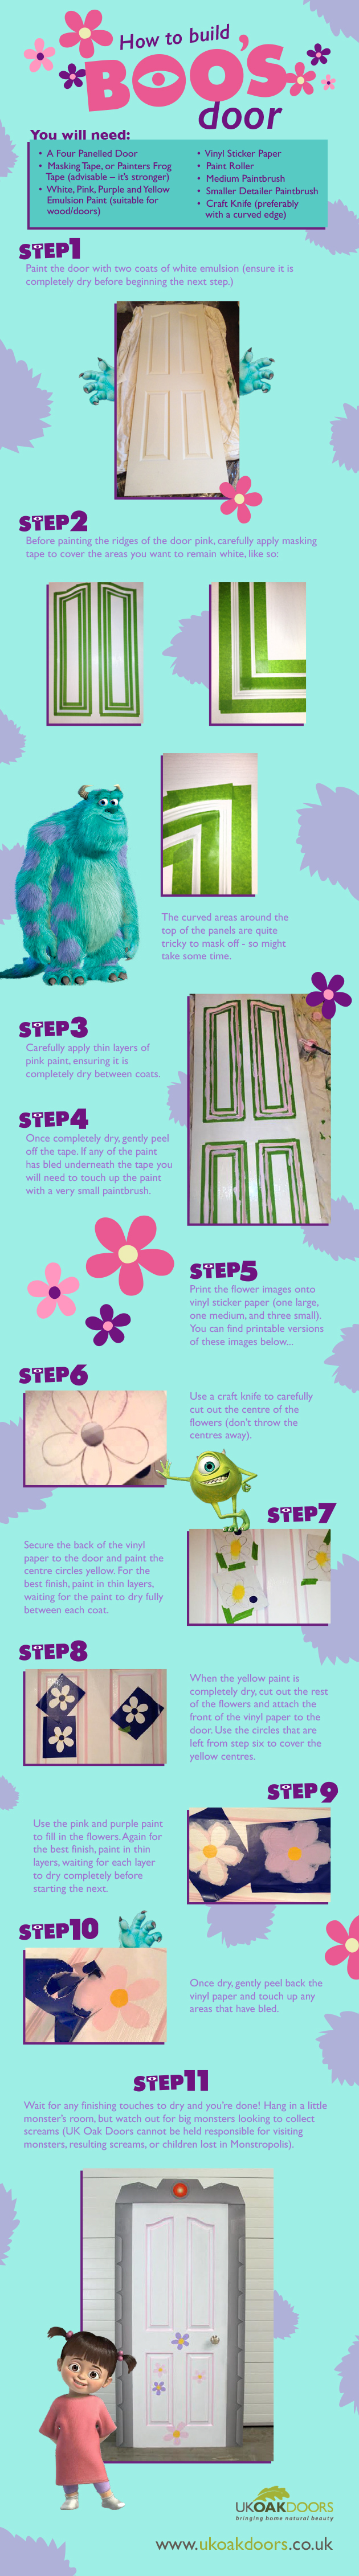 How to Build Boo's Door (Monster's Inc.)